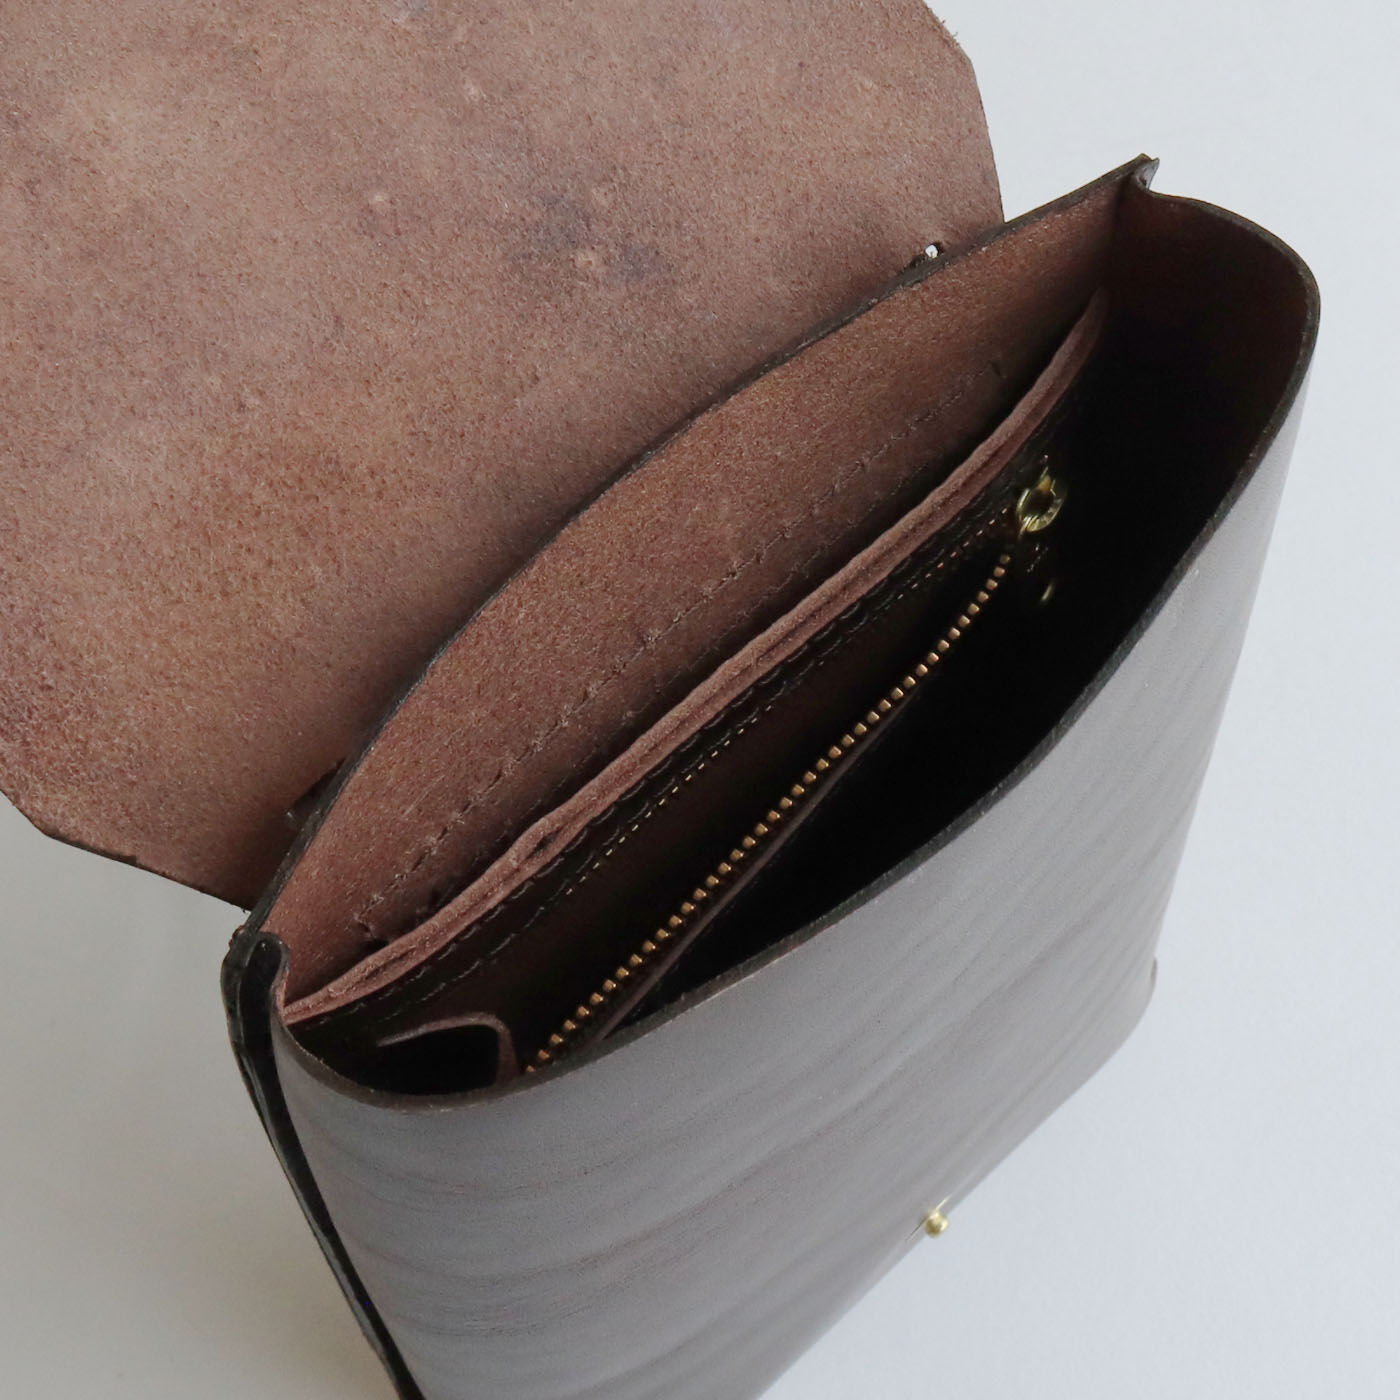 ＆Stories|福岡の鞄作家と作った 職人本革のアーネストバッグ〈ウッドブラウン〉|便利なファスナーポケット付き。